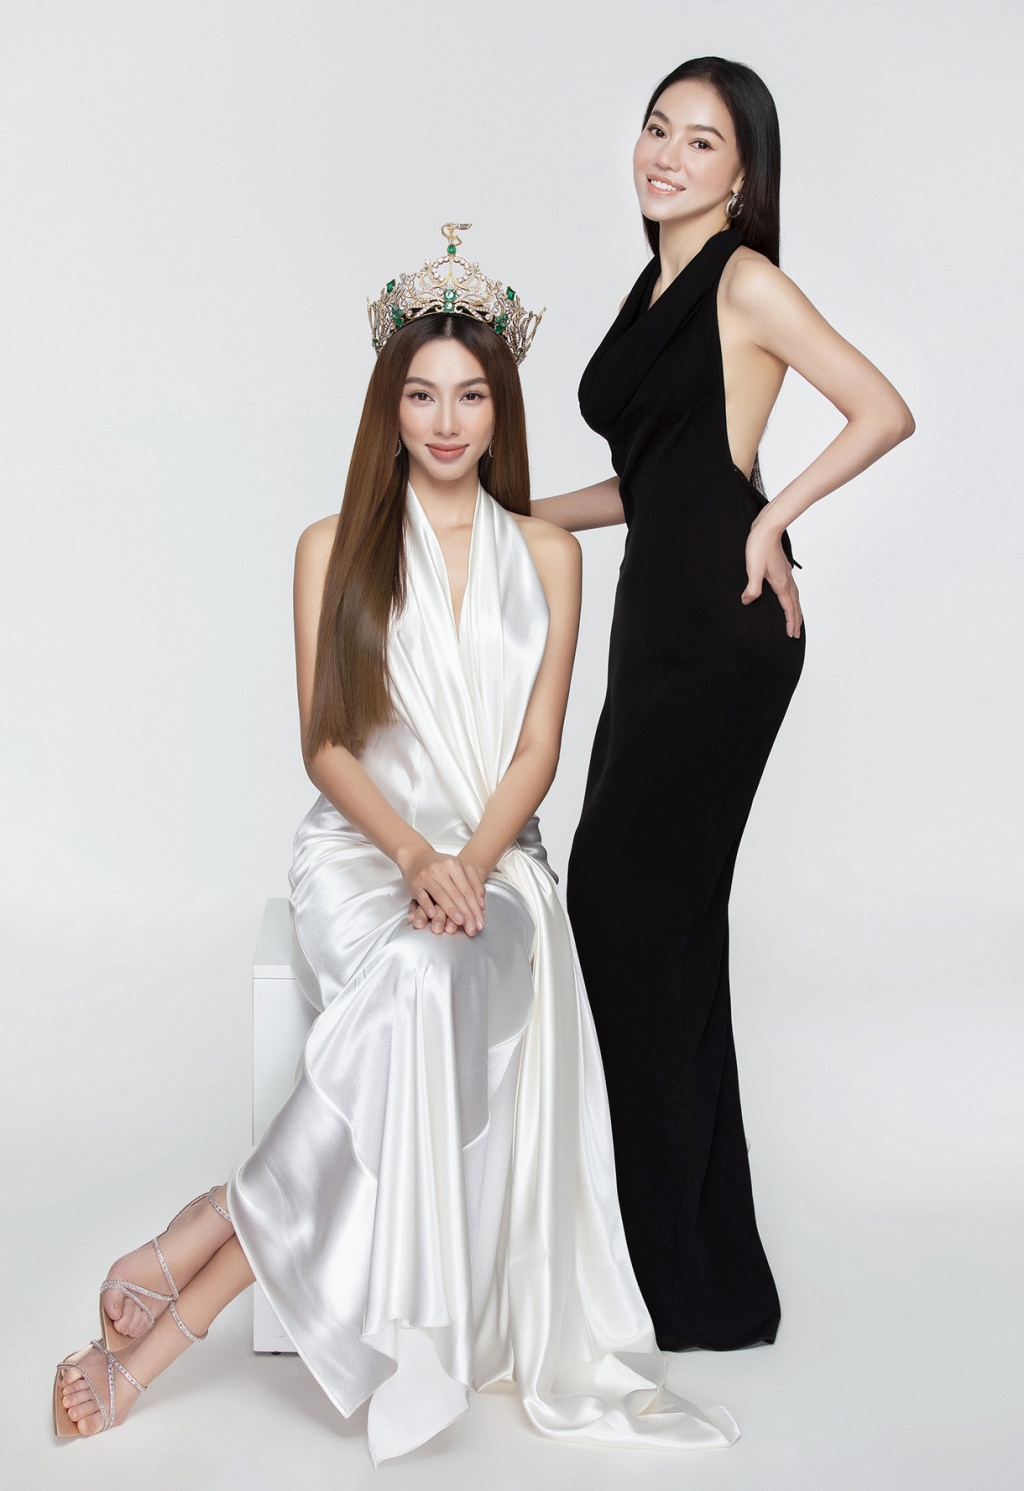 Kỷ niệm 2 tháng đăng quang, Hoa hậu Thùy Tiên cùng 'bà trùm Hoa hậu' tung ngay bộ ảnh bên vương miện MGI